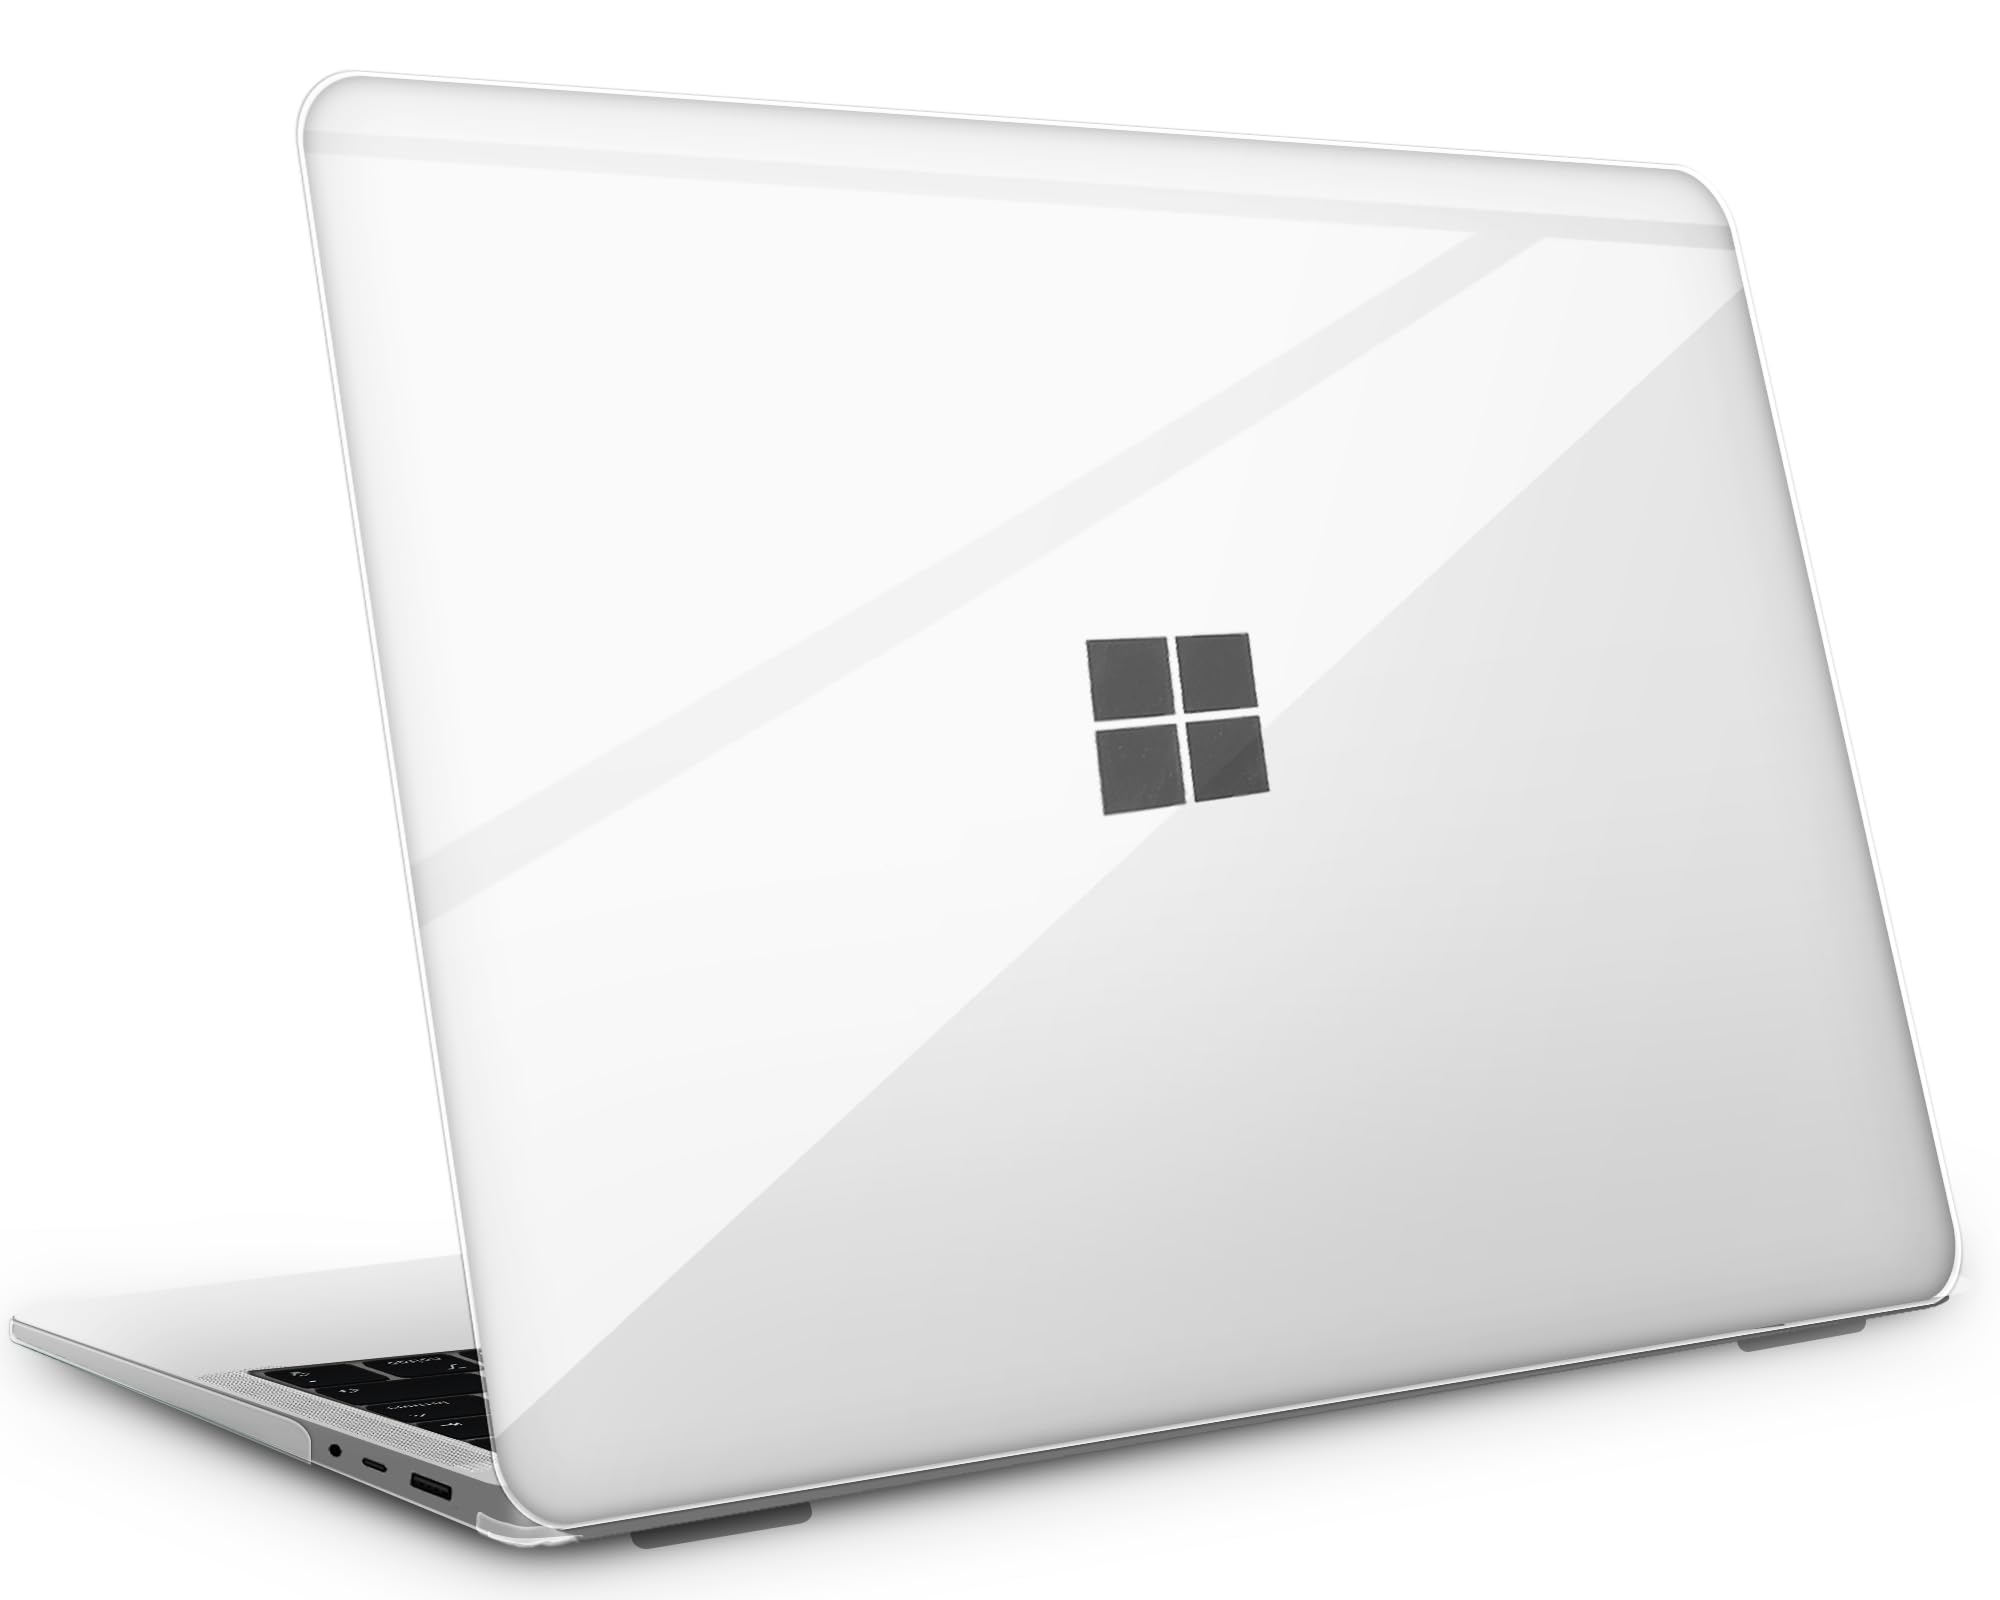 商品情報商品の説明説明 【ご注意、ご購入前に】 対応の機種と型番：12.4インチ Surface Laptop Go 3（2023年発売）/Surface Laptop Go 2（2022年発売）/ Surface Laptop Go（2020年発売） 2023/2022/2020年 (モデル番号：2013/1943) ※必ずご注文前に対応機種とモデル番号（xxxx）をご確認ください。モデル番号はSurfaceの底面に記載されています。注意：このケースは、13.5/15インチのSurface Laptop、Surface Bookシリーズ、Surface Proシリーズ、Surface Goやその他のデバイスには適していません。 【優れた構造設計(実用性と安全性を同時に実現)】 精密なカット技術と分割設計により、Surfaceの通常の開閉や外部ポートへのアクセスを全く妨げないケースです。 ケースの角は全方向から落下しないように設計されています。ボトムカバーには滑り止めパッド(滑り止め性能と通気性を両立)と最大36個の冷却孔を備えています。 【上質な素材】 本製品は、物理的な傷に強い優れたポリカーボネート素材を使用しています。光の透過率が高いので、MacBookがより一層輝きます。この素材は柔軟性があるため、設置・撤去の際も壊れる心配がないです。もちろん、黄変防止効果も侮れません。 【装着手?の?明】 トップカバーを約60°開き、トップカバーを2つのクリップで固定します。 エッジに沿って押し、2つの固定クリップがしっかりSurface Laptop Go 2/1を固定できたことを確認してください ボトムカバーを取り付け、クリップが空気循環部分にラッチされていることを確認してください すべてのクリップがロックされるまで、ケースのエッジに沿ってゆっくり押します 【ご購入後も安心】 ご注文日から 120日以内に製品不具合が生じた場合は、確認後、迅速に同一の新品と交換致します。 製品?配送に関するご質問はカスタマ-サポ-トまでお気軽にご連絡ください。主な仕様 【この製品に関するクイックアンサー】Surfaceが明るく見えるのはなぜですか?保護ケース付きですから。 なぜ、Surfaceに傷がつくことを心配しないのですか?保護ケース付きですから。 保護ケースを付けても、Surfaceが薄くて軽いのはなぜですか?これは、ケースにポリカーボネートを使用しているためです。br?【Laptop Goに特化した構造設計】 ?精密なカット技術と分割設計により、Surface Laptop Go 3/2/1の通常の開閉や外部ポートへのアクセスを全く妨げないケースです。 ?ケースの角は全方向から落下しないように設計されています。 ?ボトムカバーには滑り止めパッド(滑り止め性能と通気性を両立)と最大36個の冷却孔を備えています。br?【上質な素材】 本製品は、物理的な傷に強い優れたポリカーボネート素材を使用しています。光の透過率が高いので、Surfaceがより一層輝きます。この素材は柔軟性があるため、設置・撤去の際も壊れる心配がないです。もちろん、黄変防止効果も侮れません。br【取り付け簡単】上下カバー分離しており、単体使用が可能。機体にぴったり合わせて、とりつけたり、とりはずしたりすることが簡単にできます。何度開閉してもパソコン本体の邪魔にならない、まるで何もつけてないかのようさ薄さで，持ち運びがしやすい。br??【対応機種】 12.4インチ Surface Laptop Go 3（2023年発売）/ Surface Laptop Go 2（2022年発売）/ Surface Laptop Go（2020年発売） 2022/2020年 (モデル番号：2013/1943)※必ずご注文前に対応機種とモデル番号（xxxx）をご確認ください。モデル番号はSurfaceの底面に記載されています。注意：このケースは、13.5/15インチのSurface Laptop、Surface Bookシリーズ、Surface Proシリーズ、Surface Goやその他のデバイスには適していません。